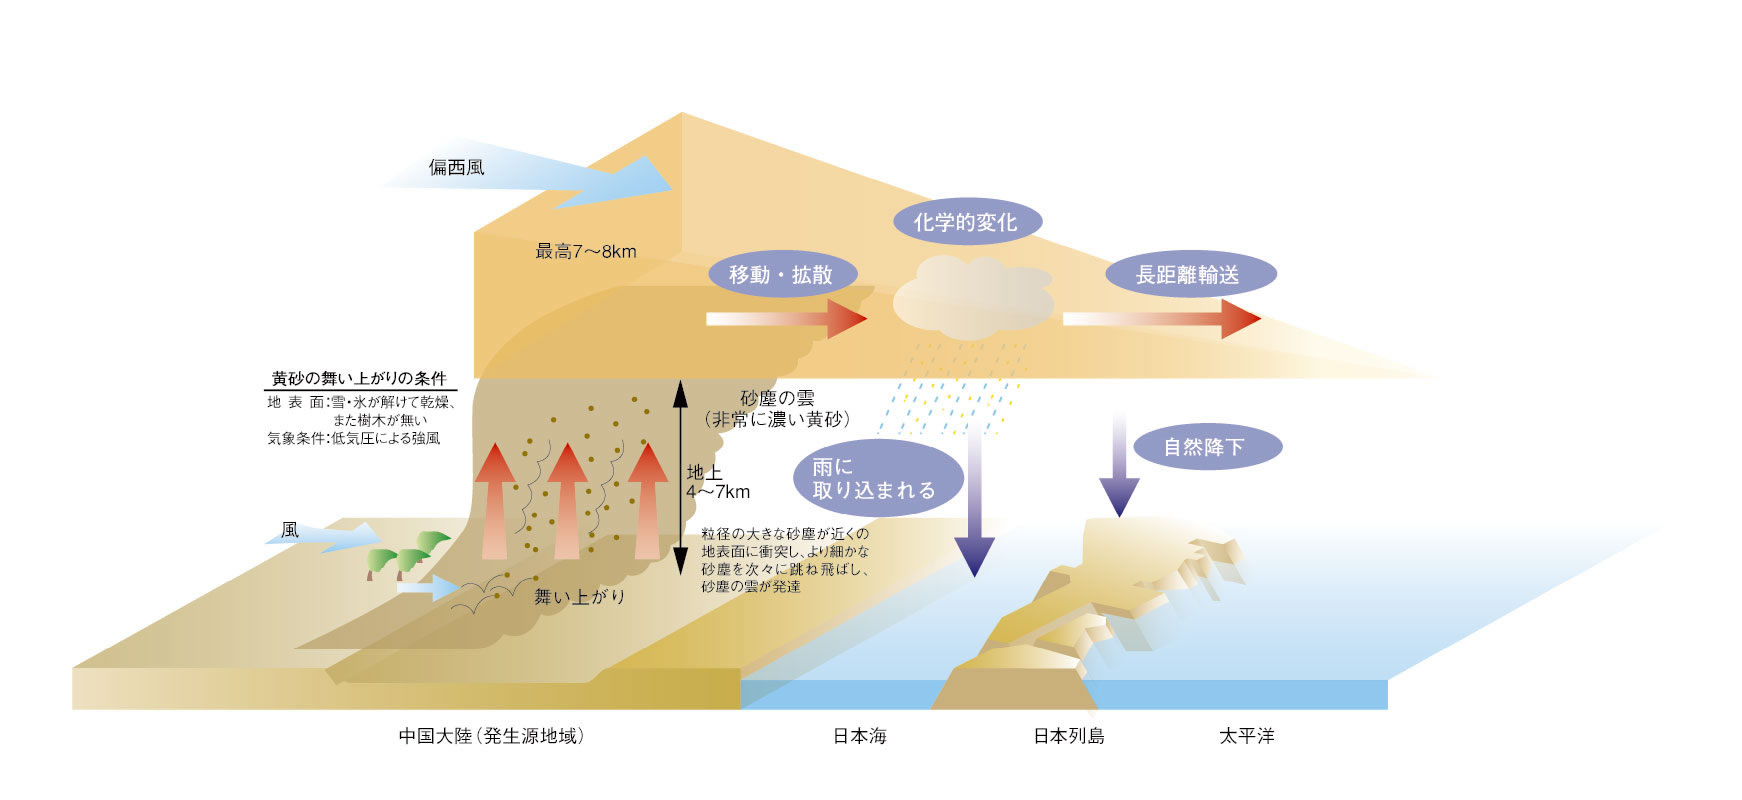 黄砂発生のメカニズム説明の図、風により黄砂が舞い上がり風に運ばれ大気中で化学的変化を起こし短距離で降り注ぐ場合、海を渡り長距離移動後で降り注ぐ場合。